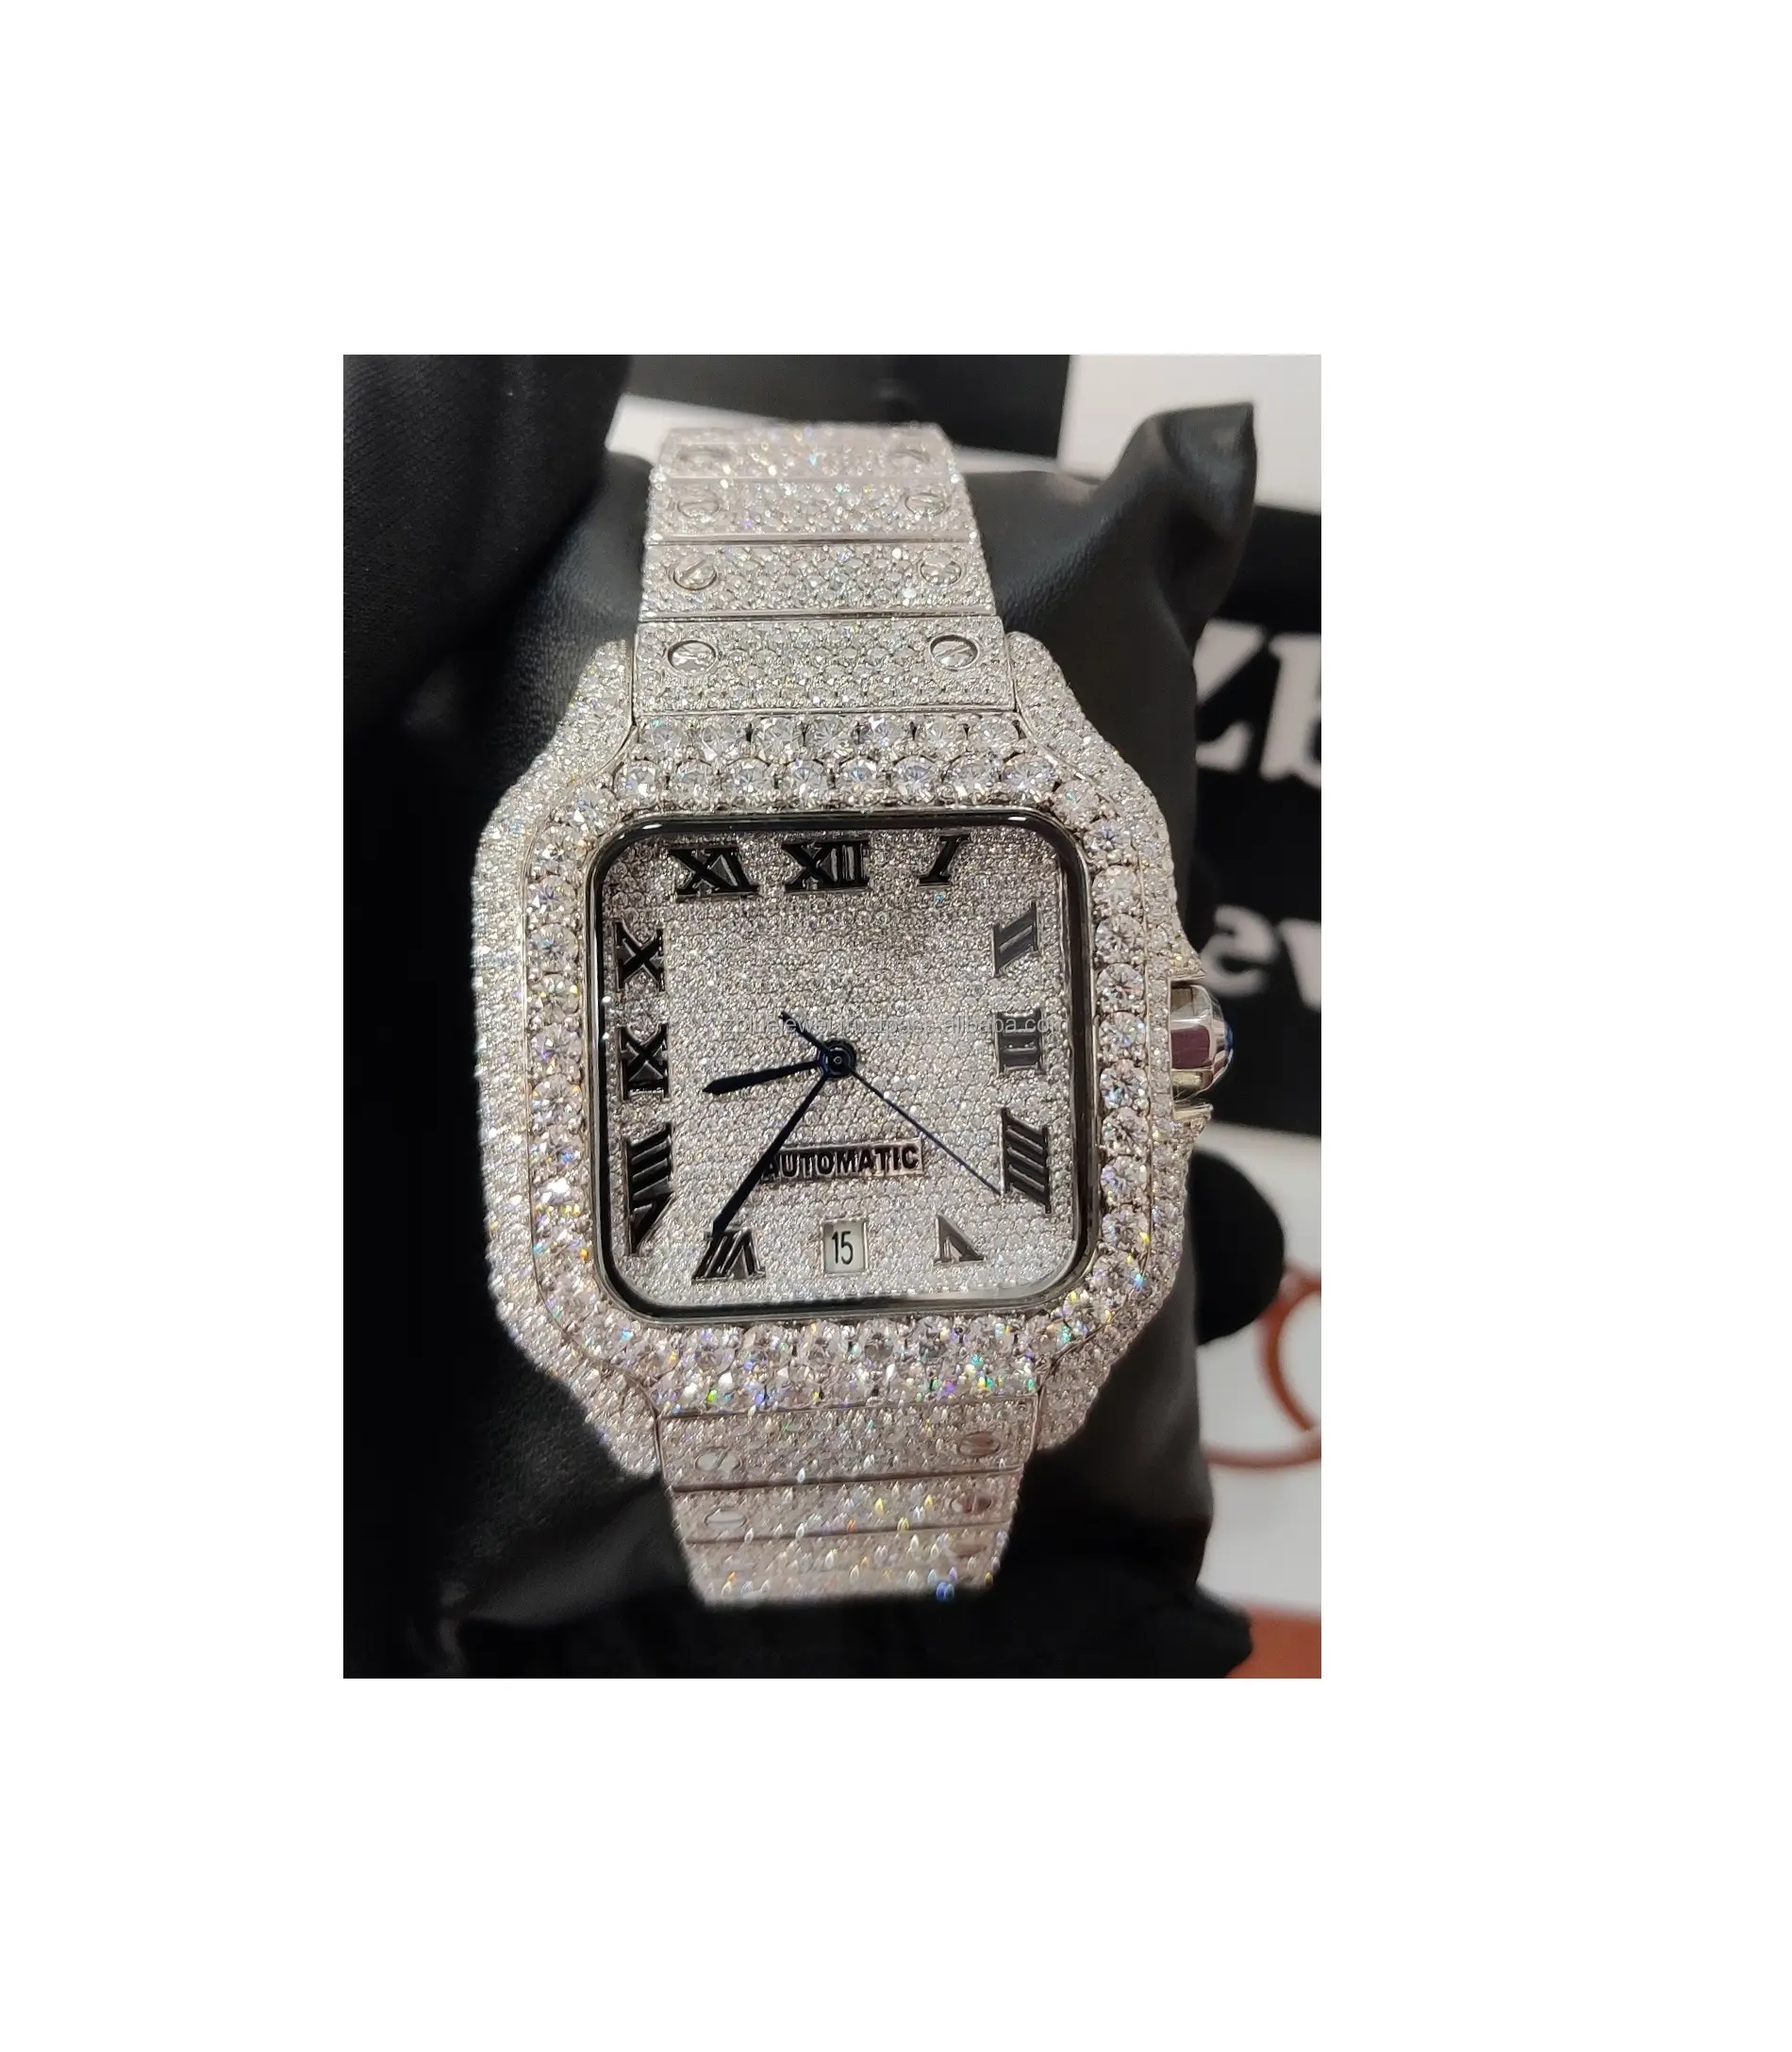 Großhandels preis Luxus hand gefertigte VVS Clarity Moissan ite Diamond Micro Einstellung besetzt voll vereiste Armbanduhr für Männer Frauen